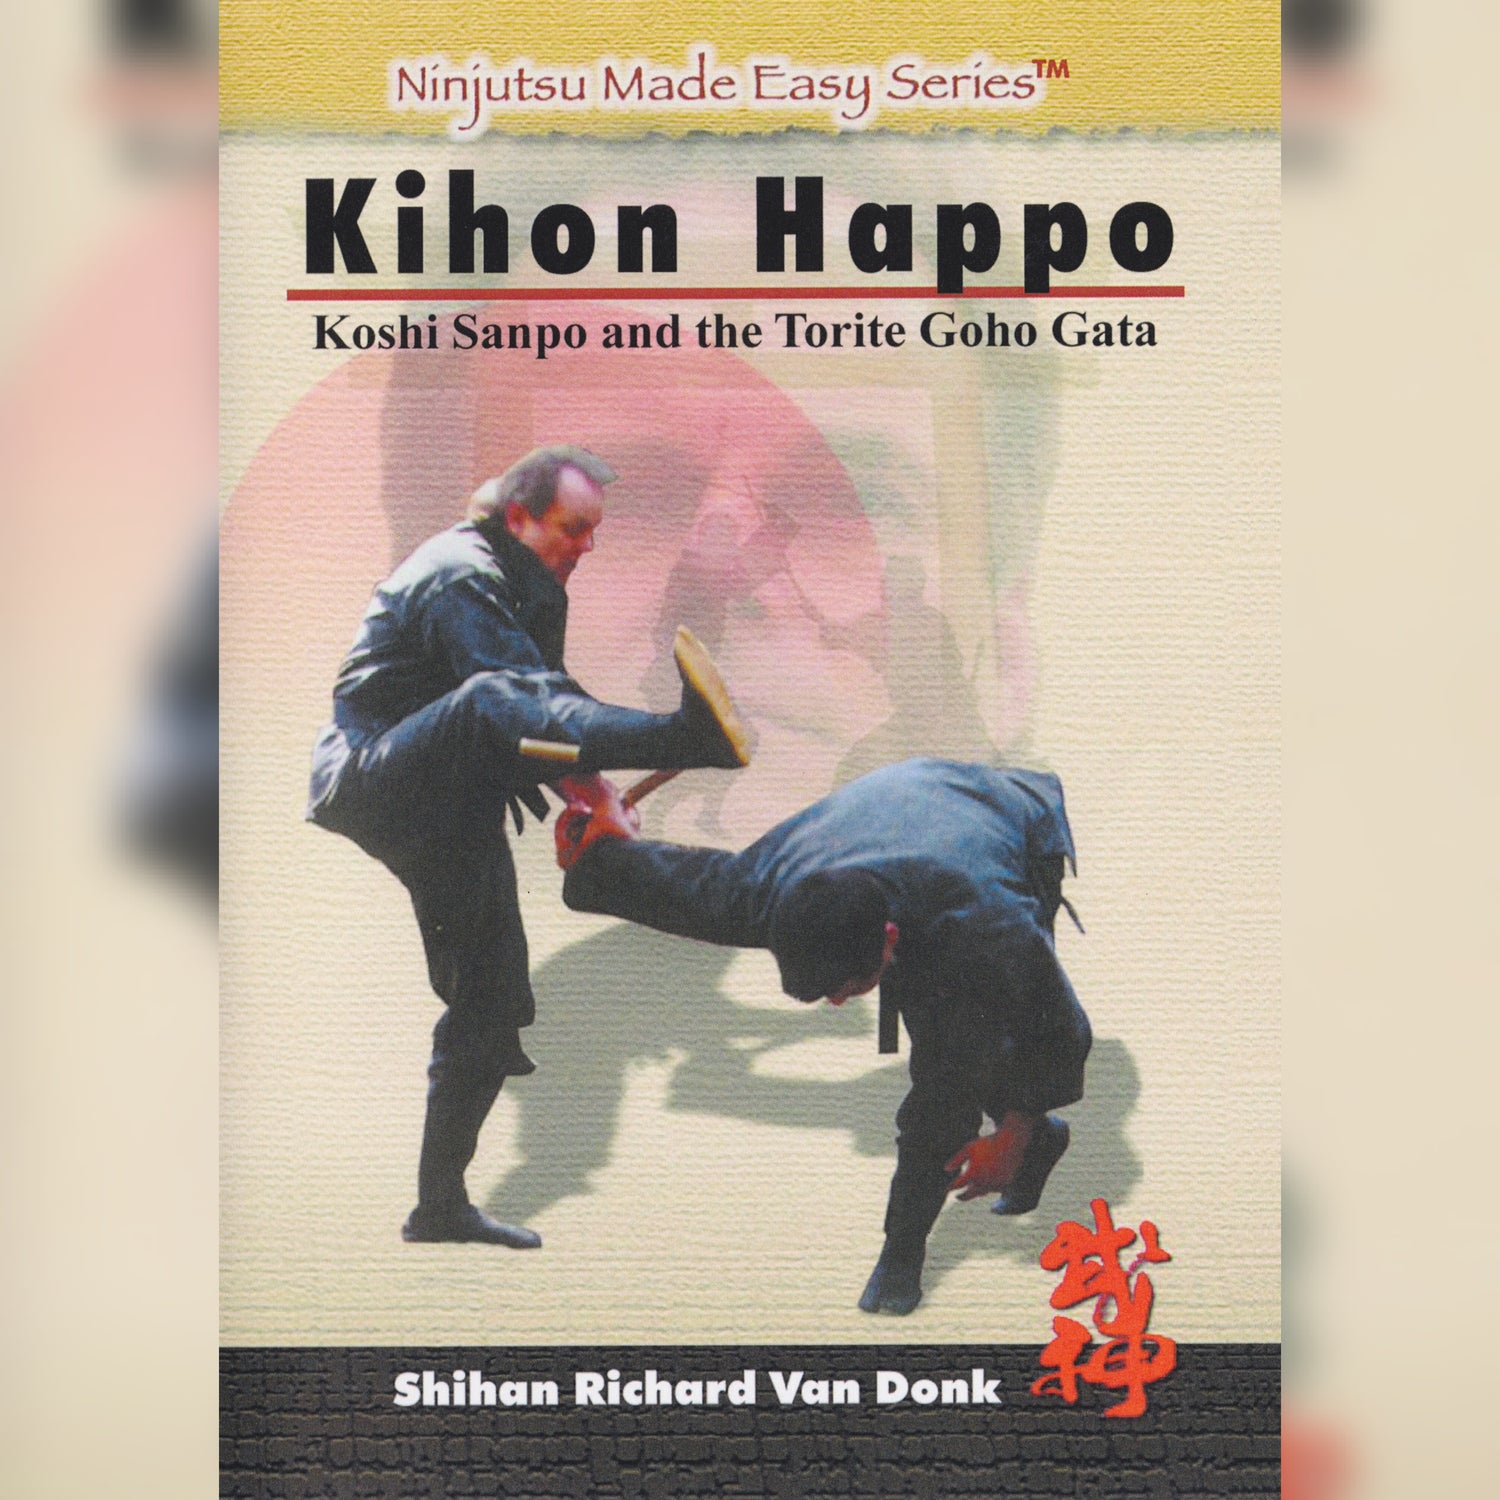 Kihon Happo by Richard Van Donk (On Demand)